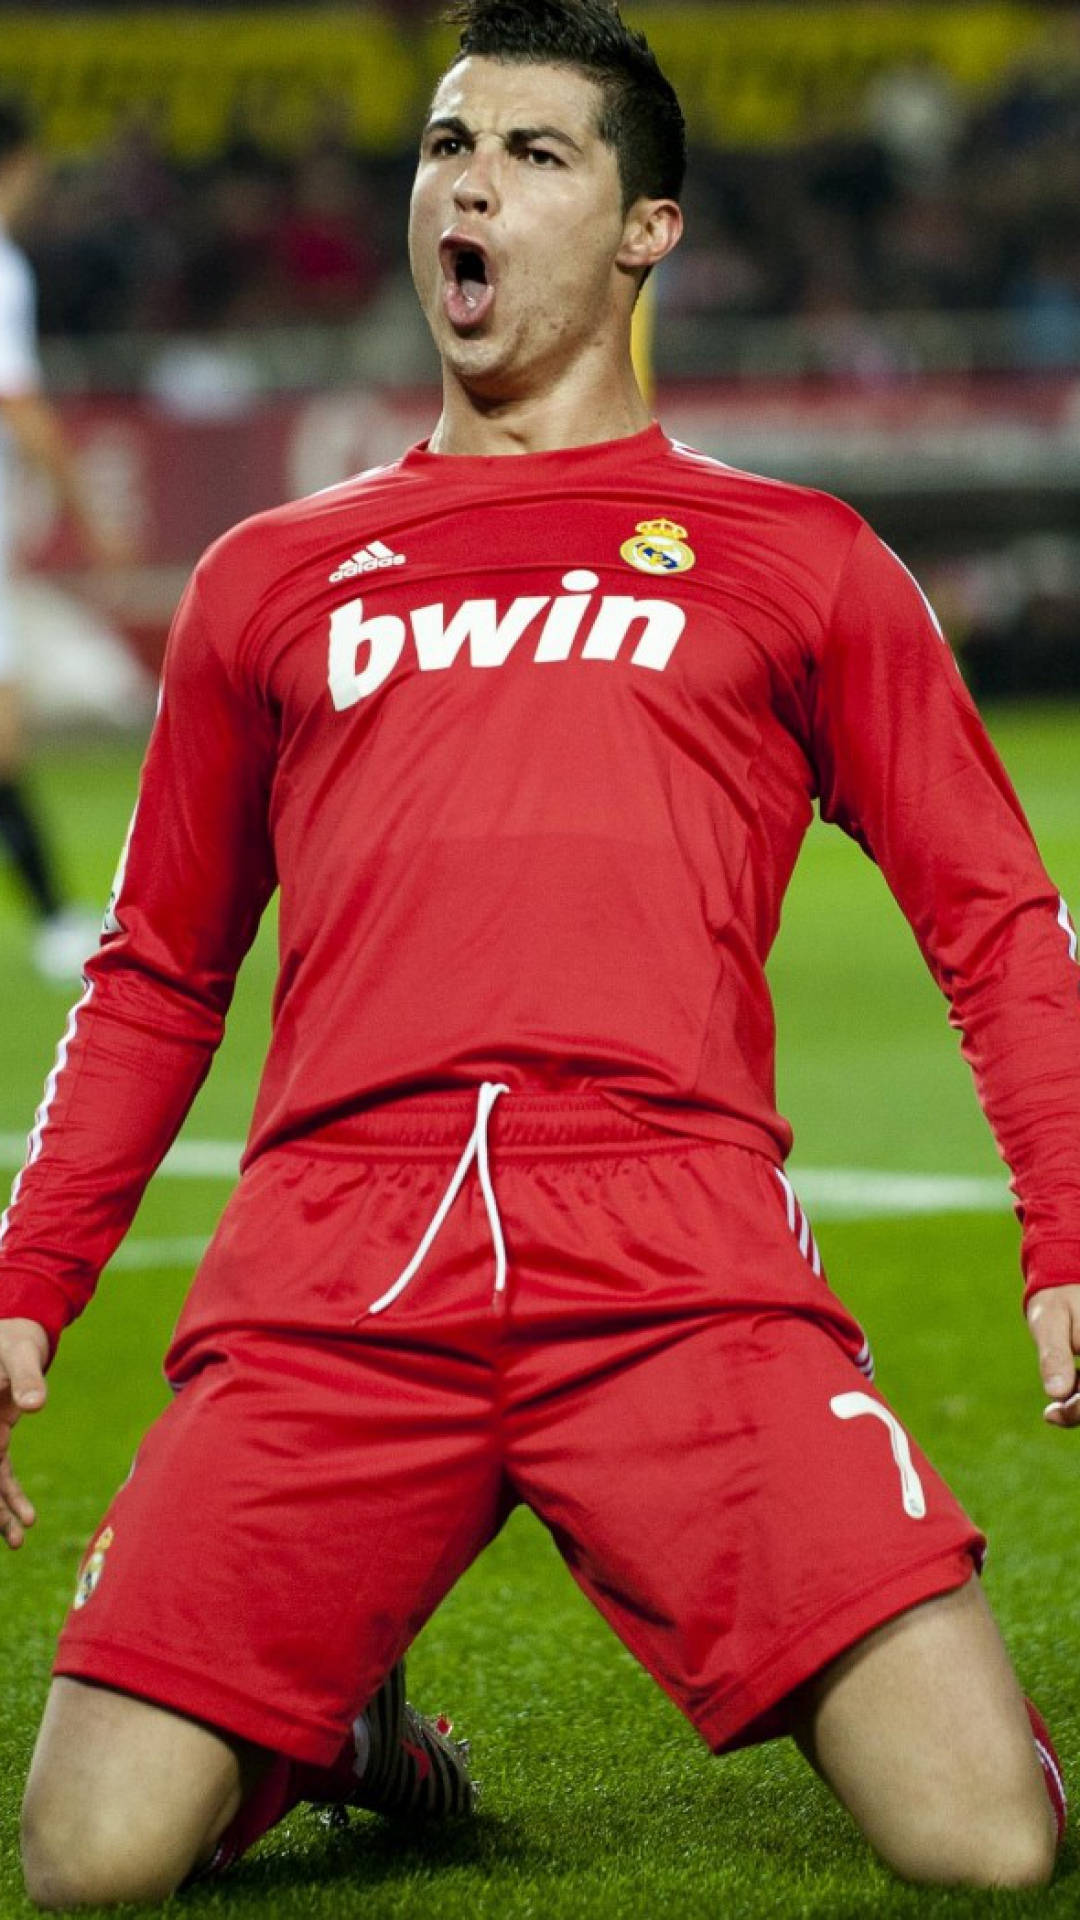 Cristiano Ronaldo Portugal Red Bwin Wallpaper